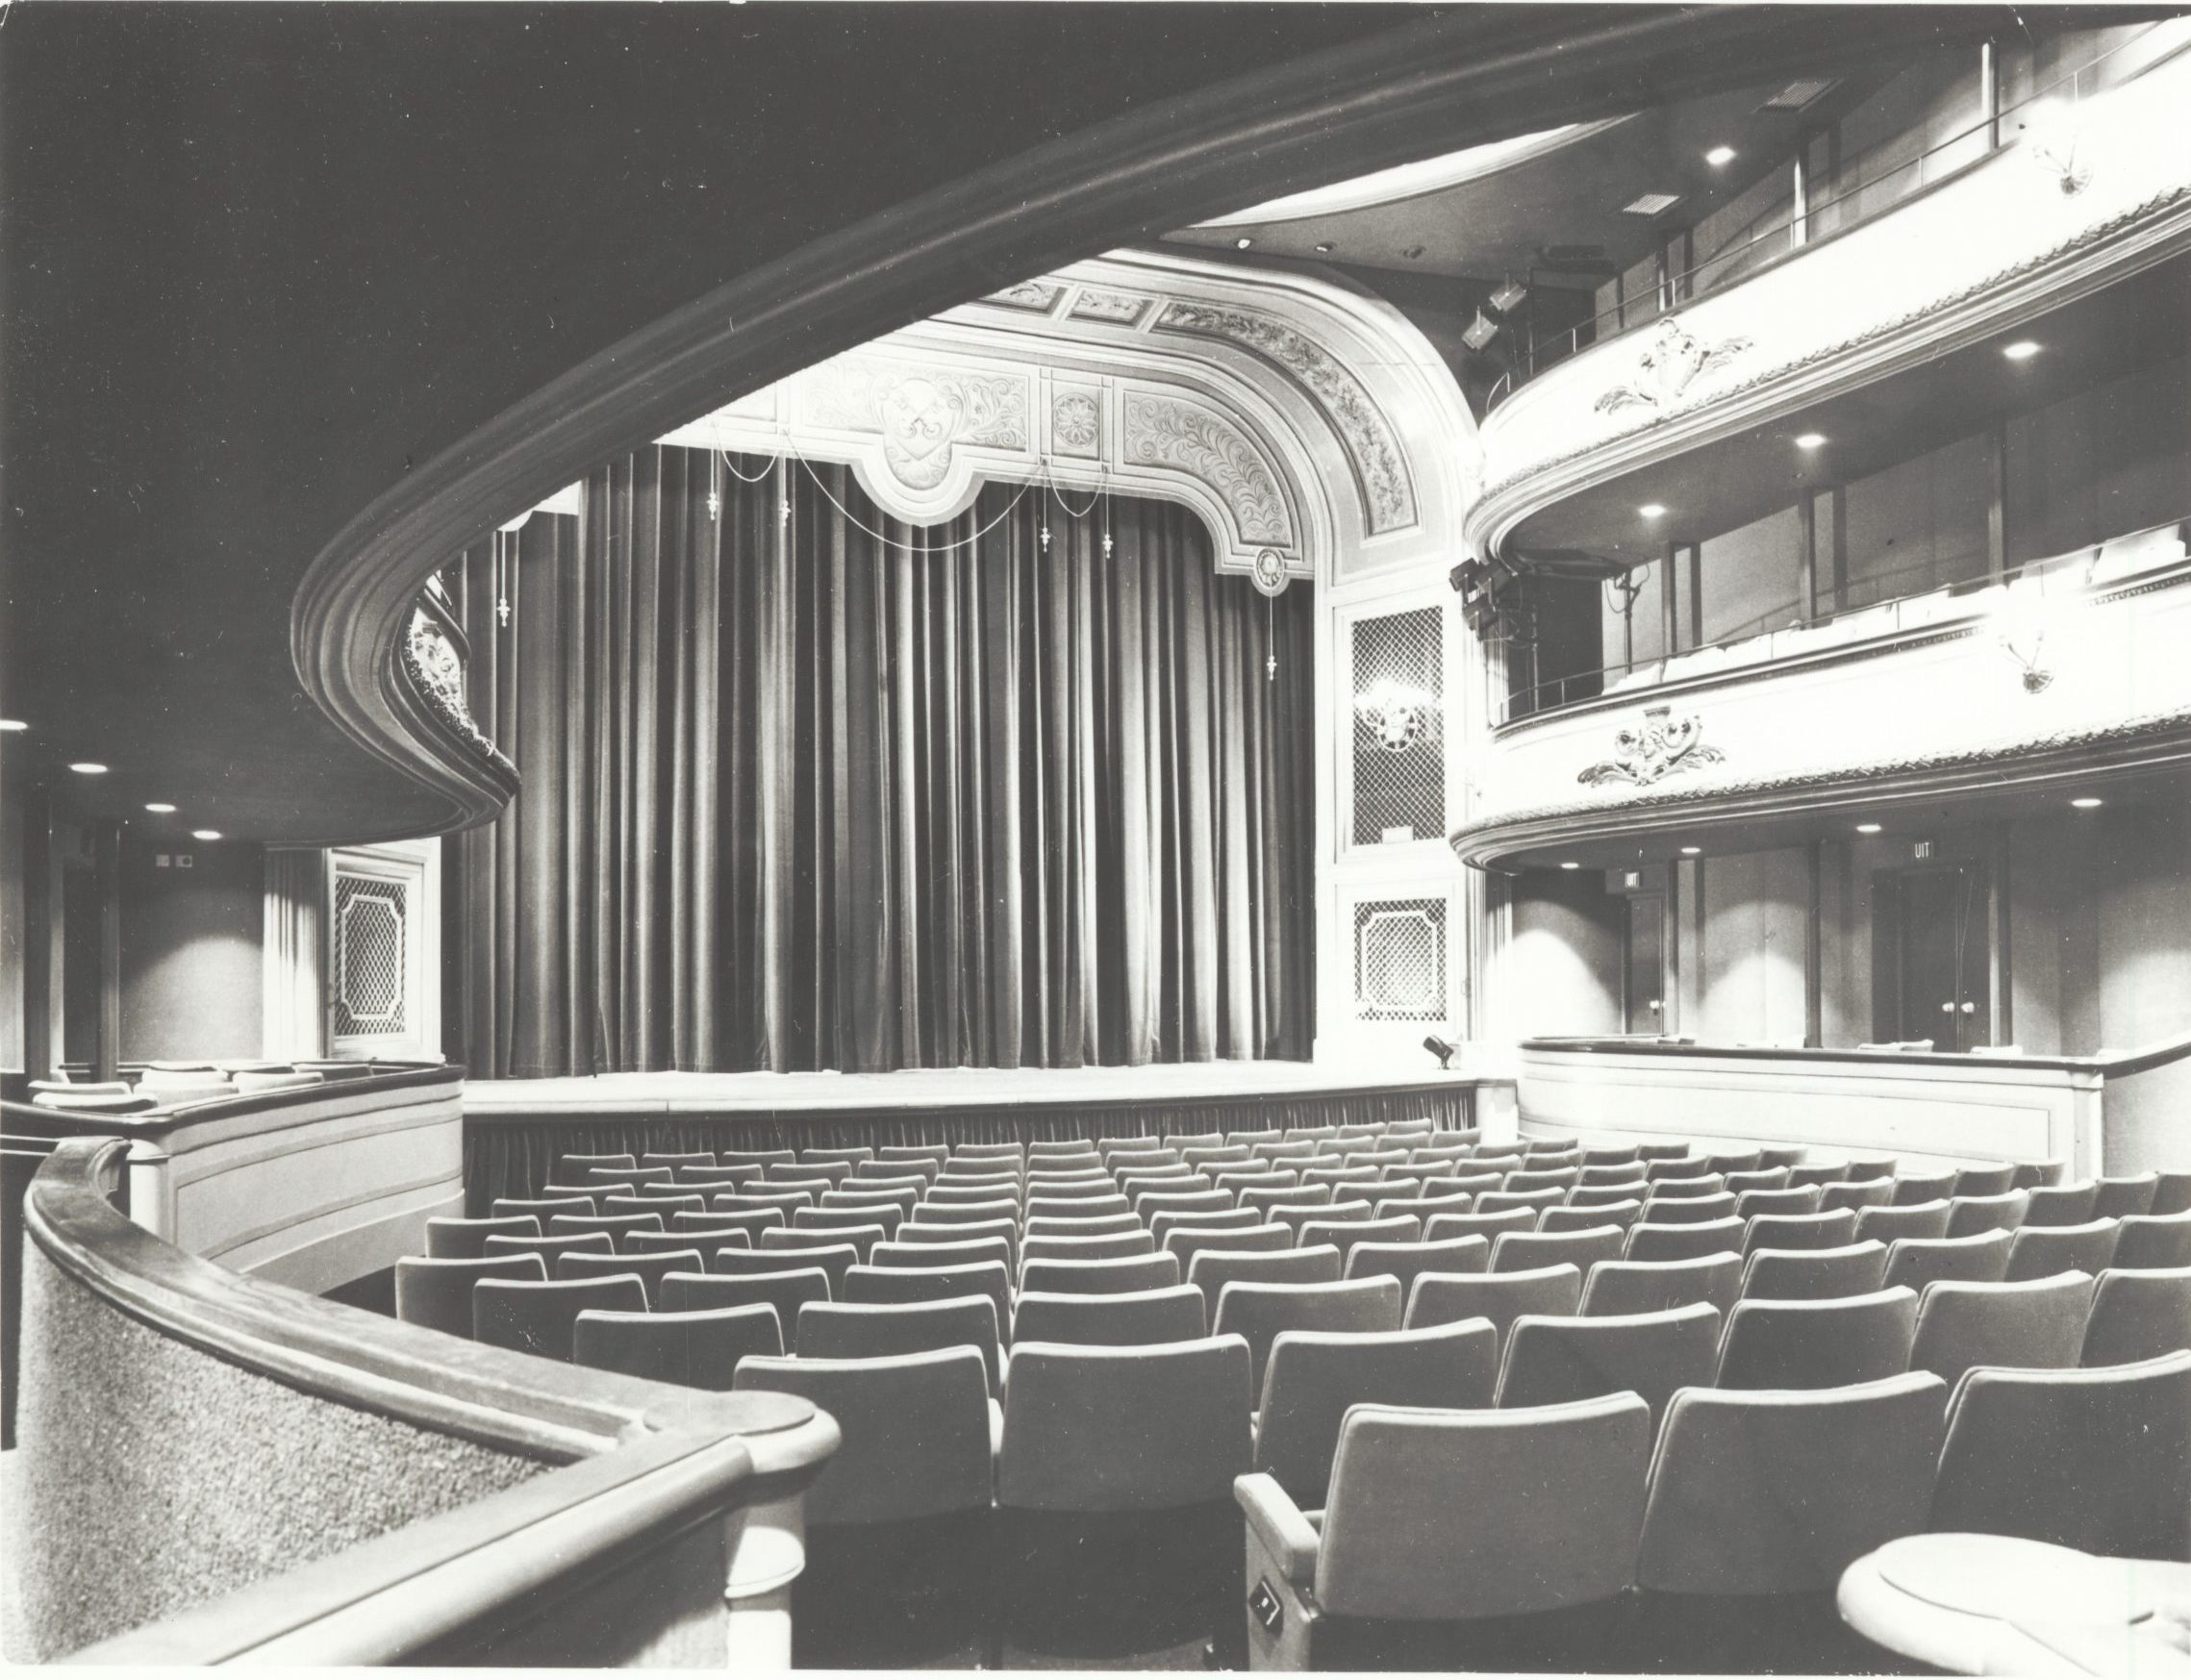 Foto uit 1978 van de theaterzaal Leidse Schouwburg